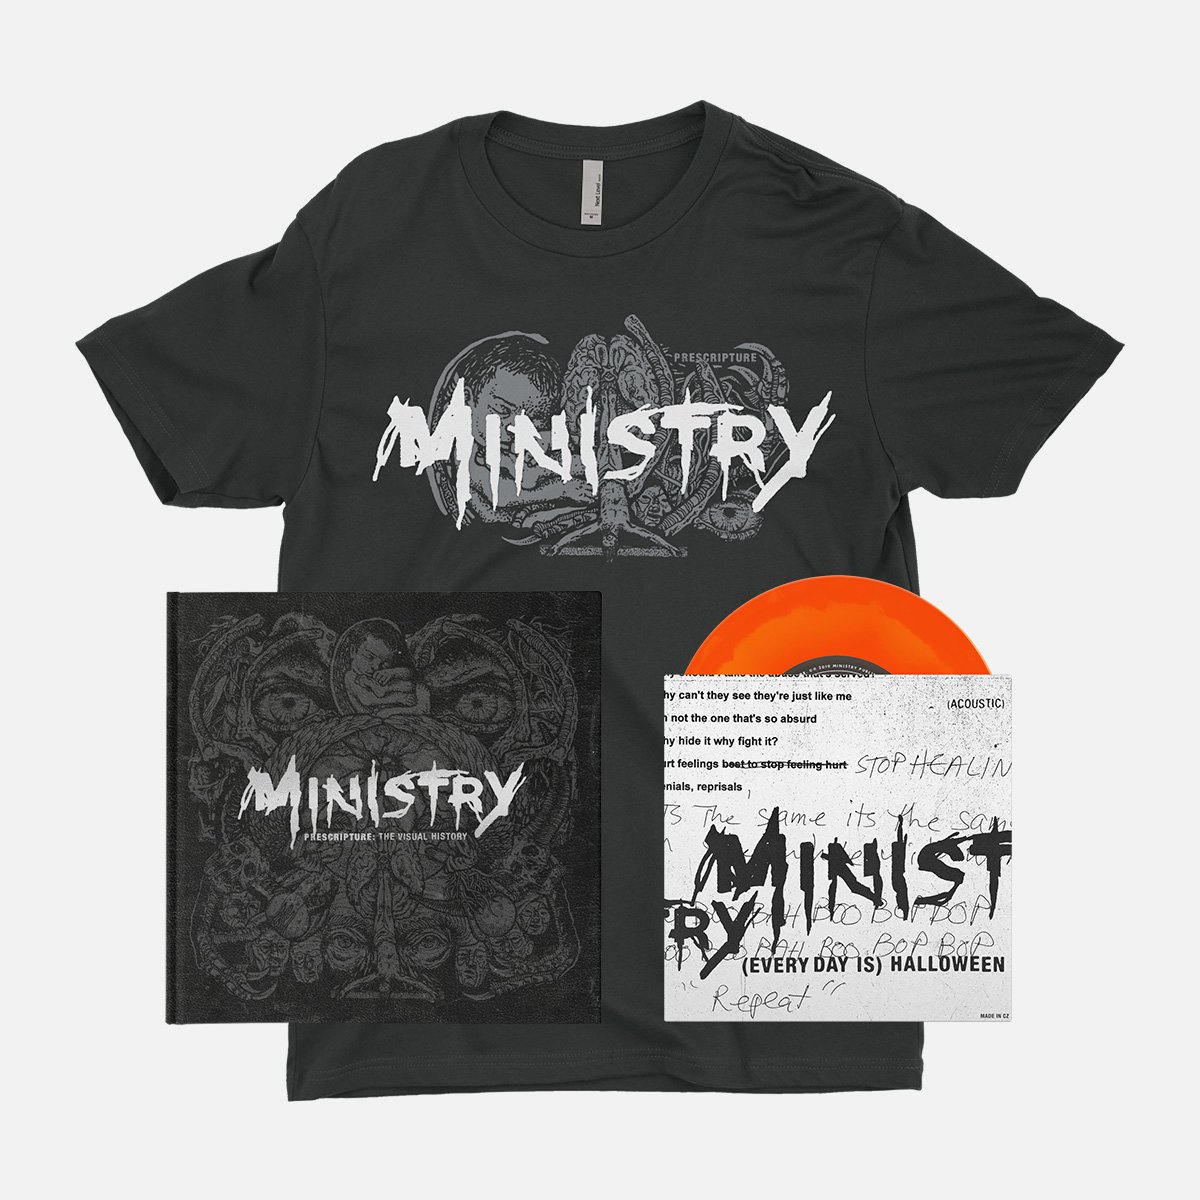 Ministry: Prescripture (Deluxe Edition)